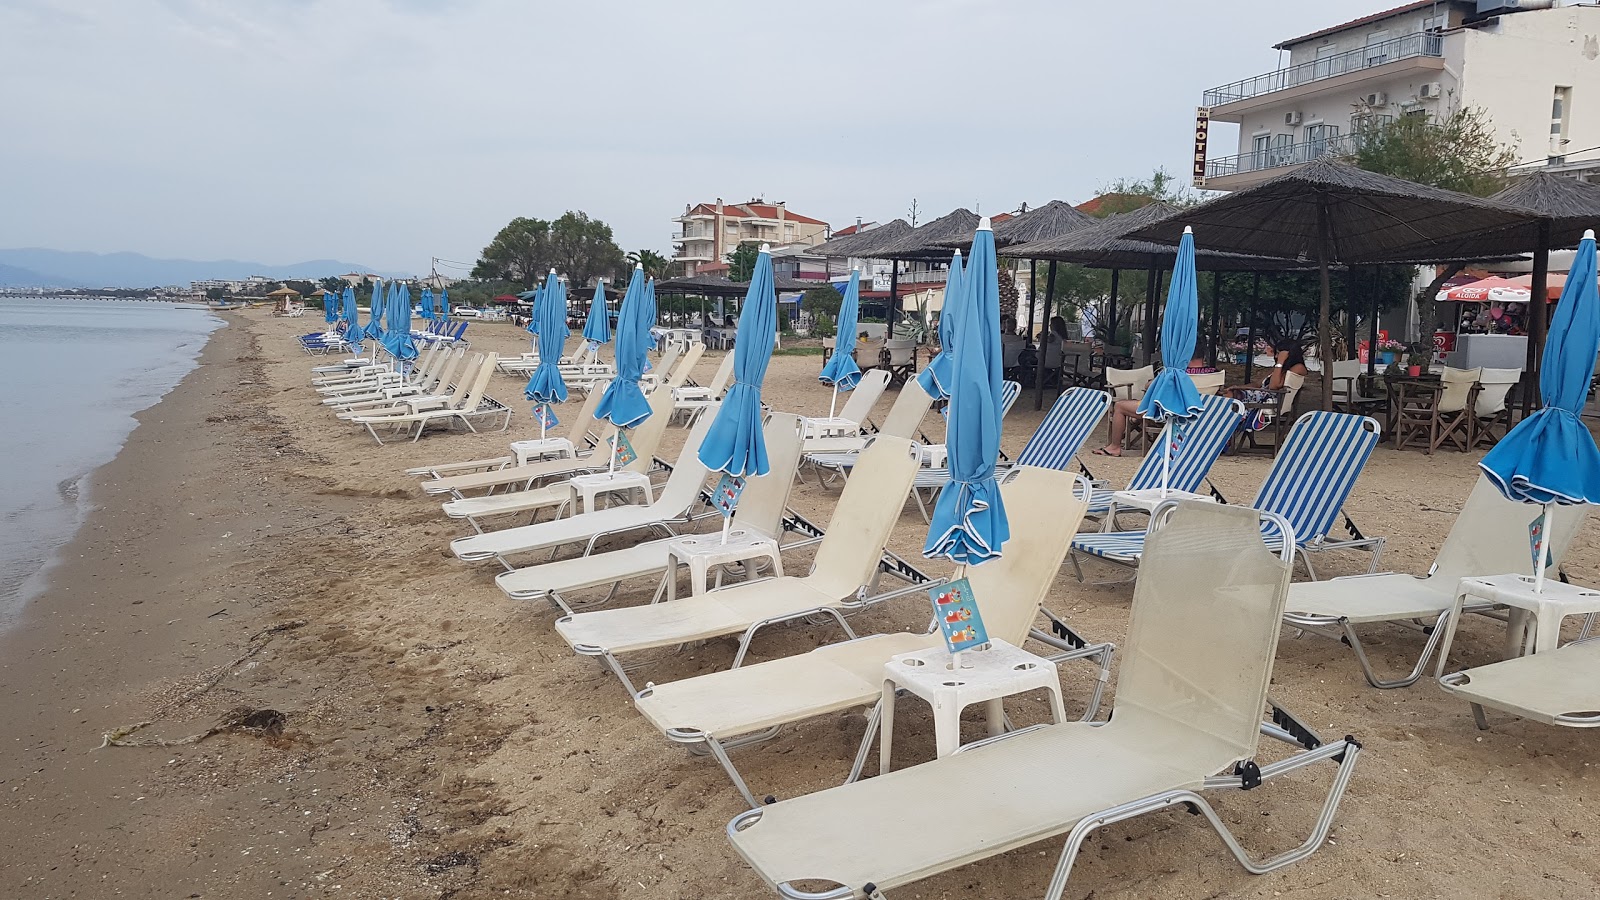 Agia Triada beach II'in fotoğrafı geniş plaj ile birlikte